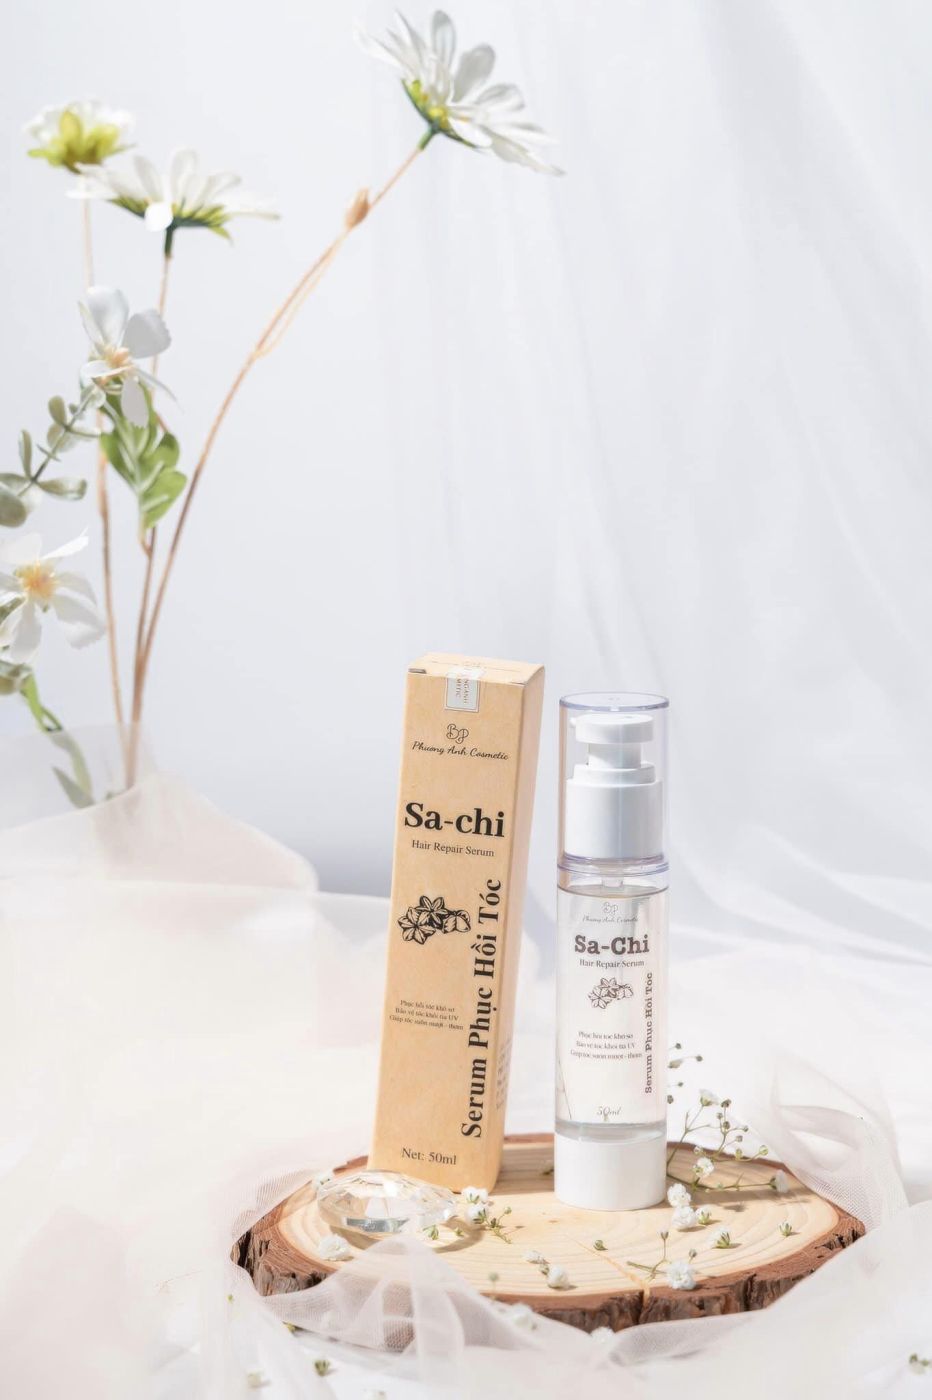 Serum Dưỡng Phục Hồi Tóc Chắc Khỏe Sachi Hair Repair Serum 50ml [Phương Anh Cosmetic]